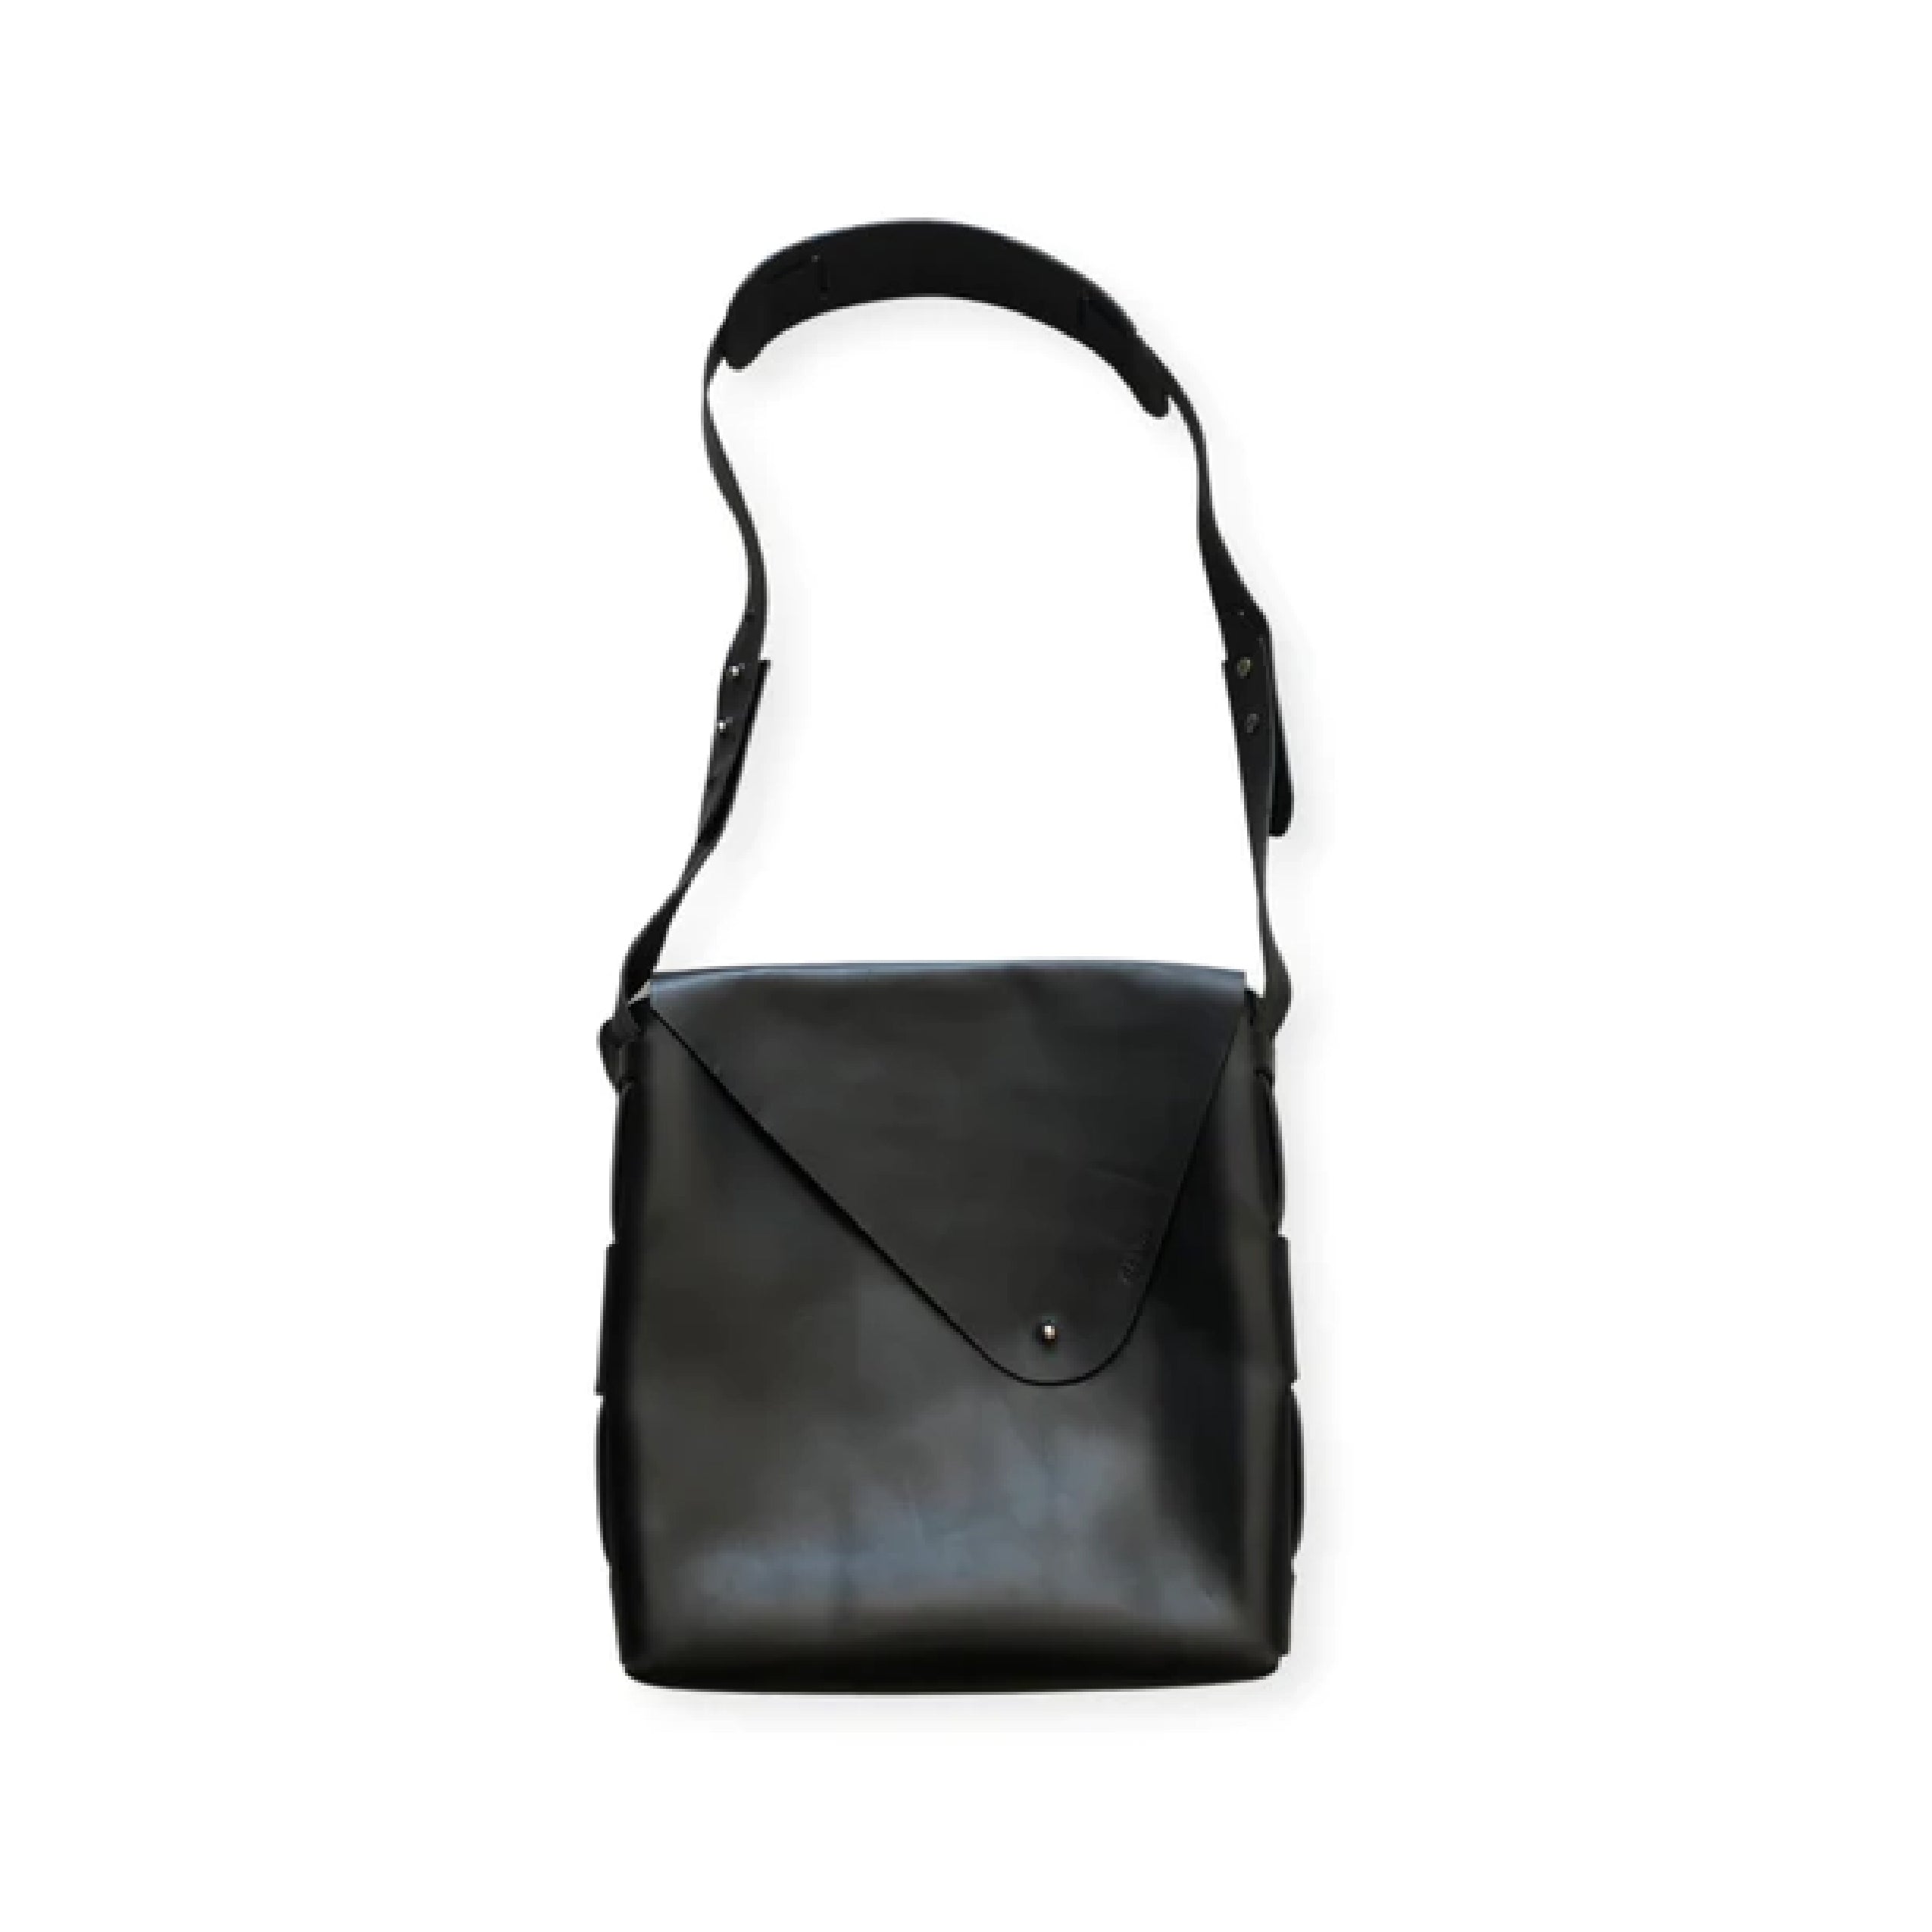 Dean UB01 Unisex Vertical Messenger Bag black leather